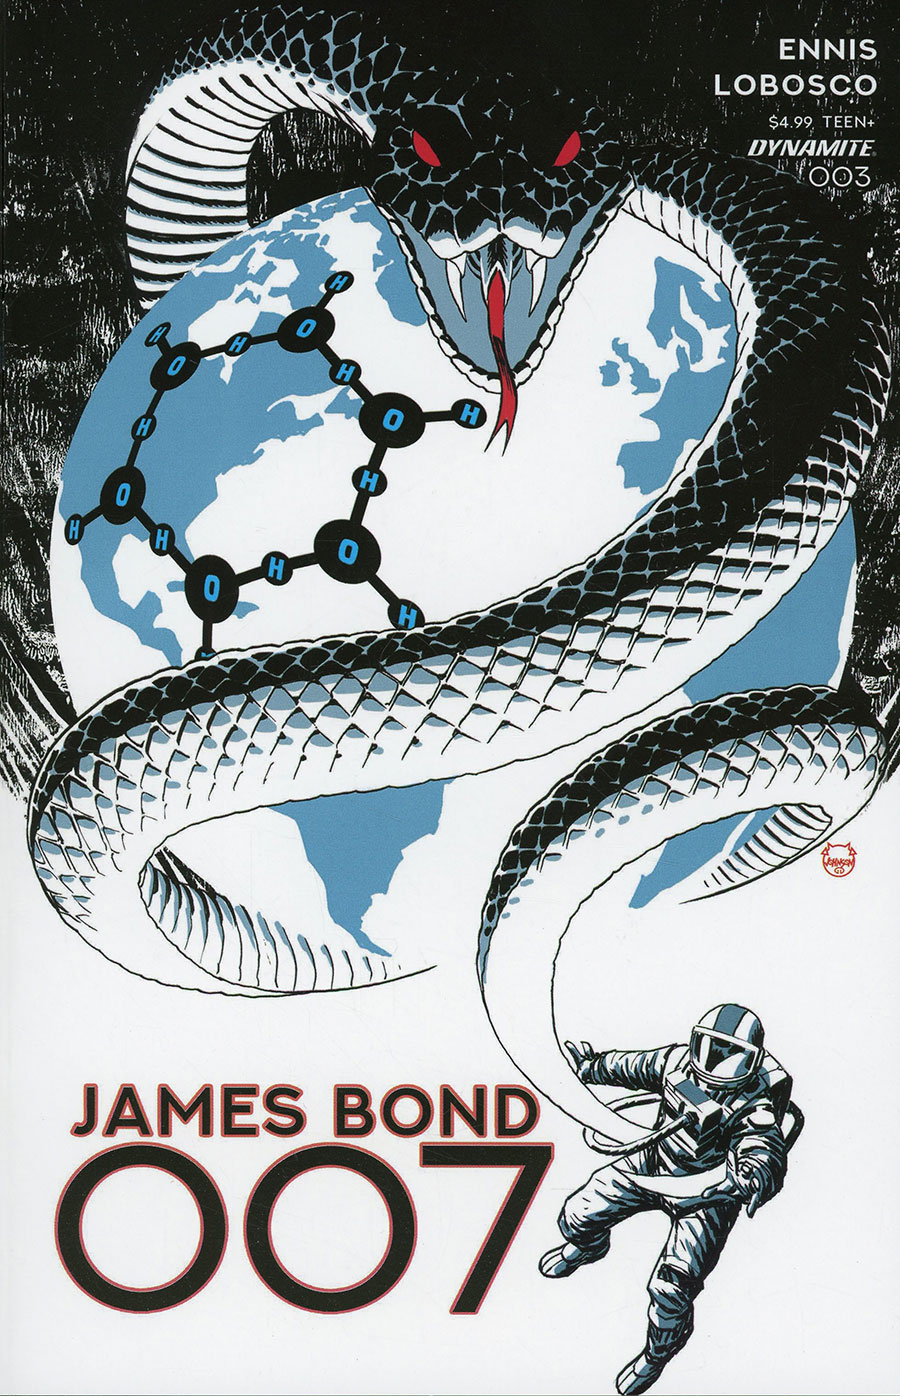 James Bond 007 Vol 2 #3